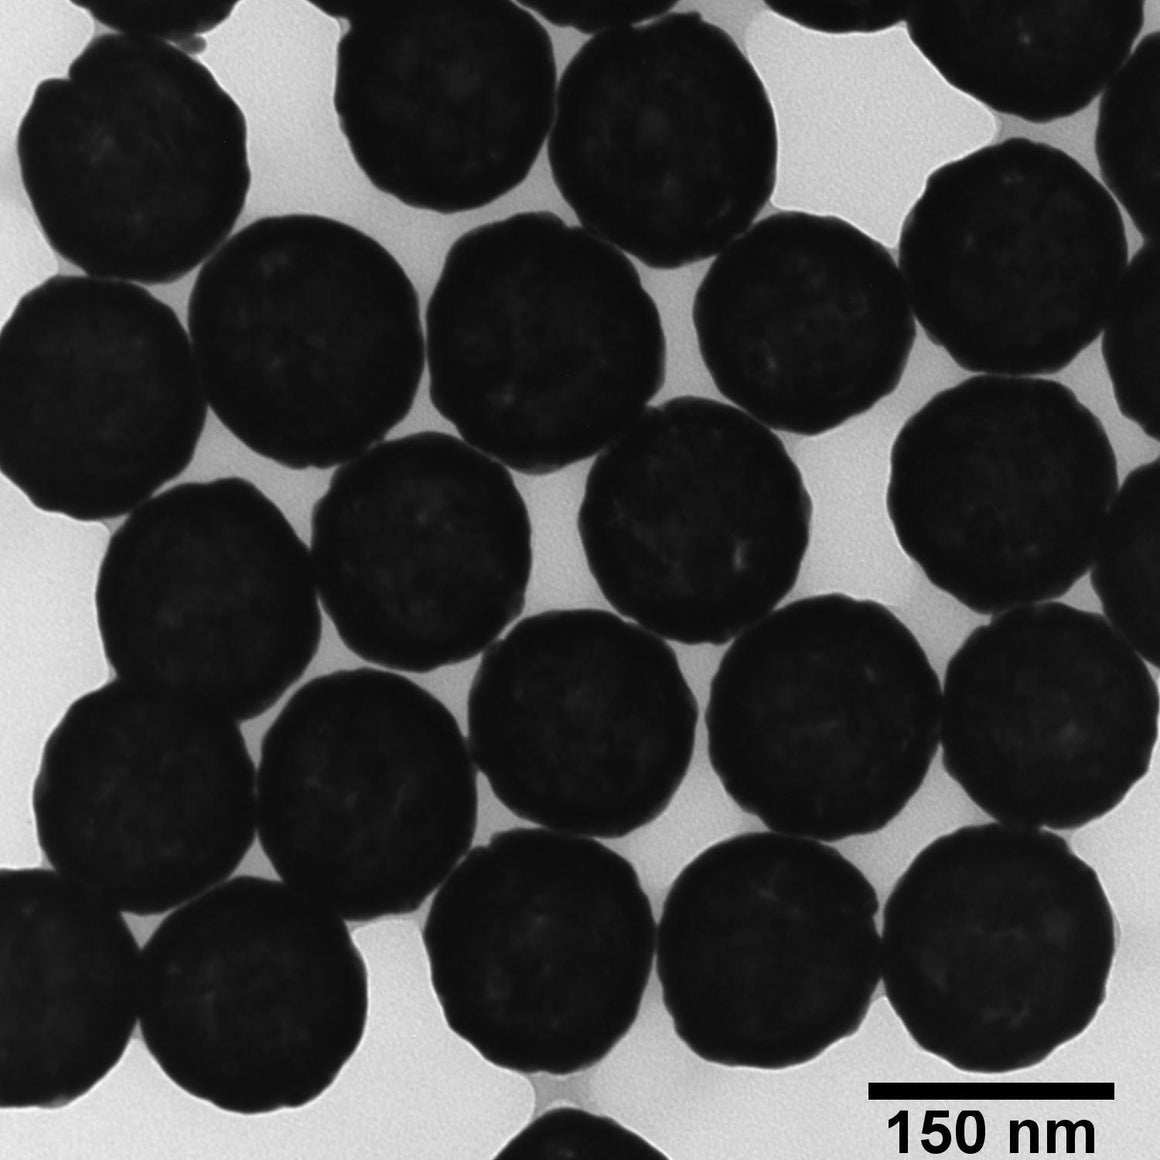 BioReady Gold Nanoshells – Streptavidin